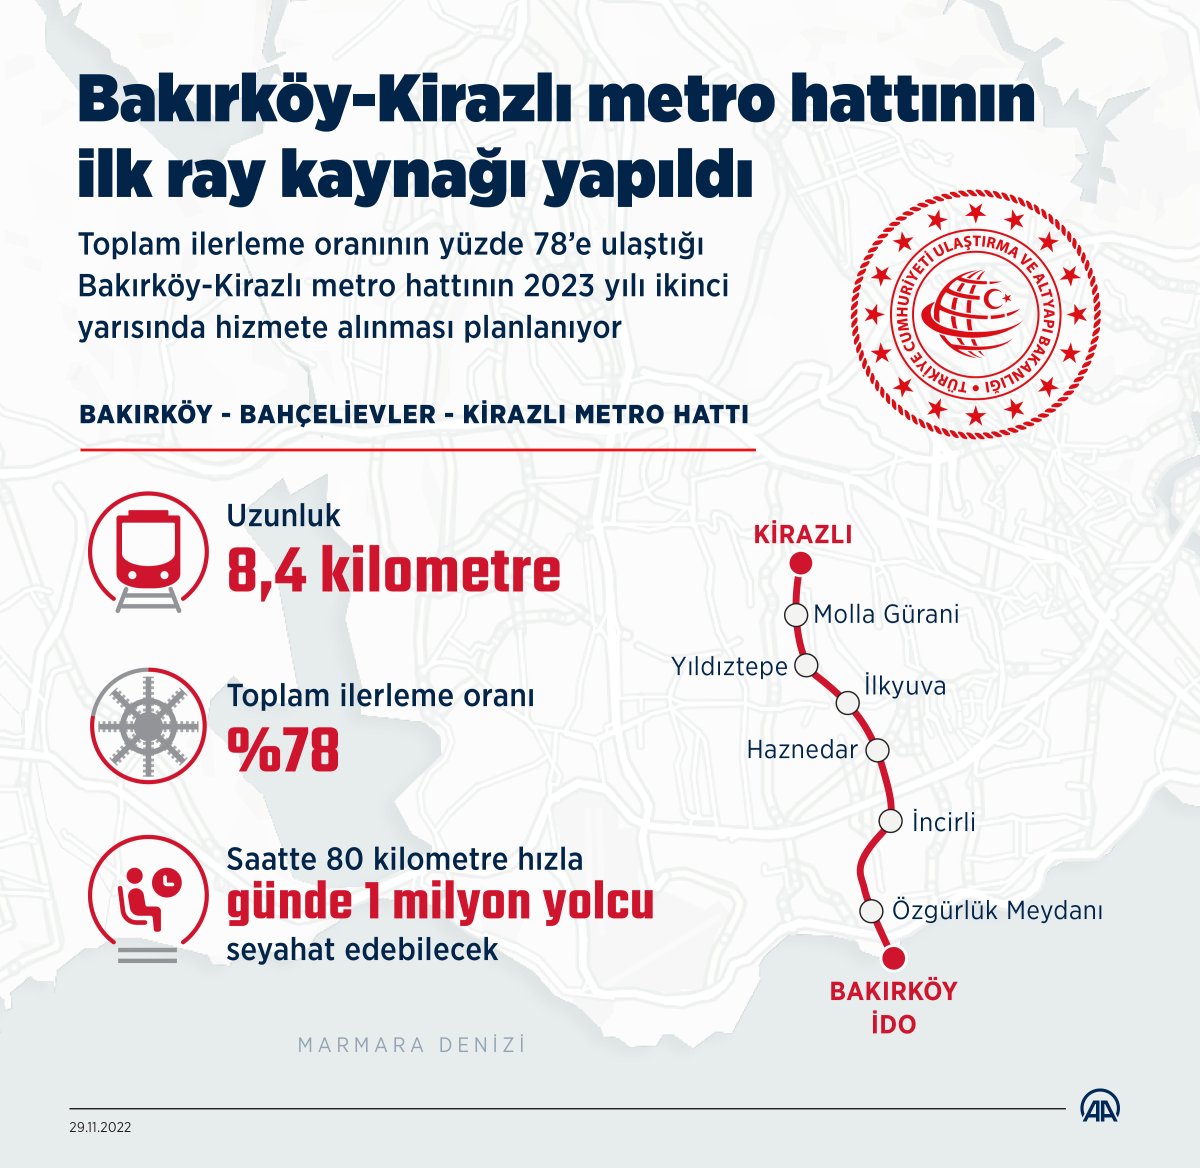 Bakırköy-Kirazlı metro hattında ilk kaynak #2